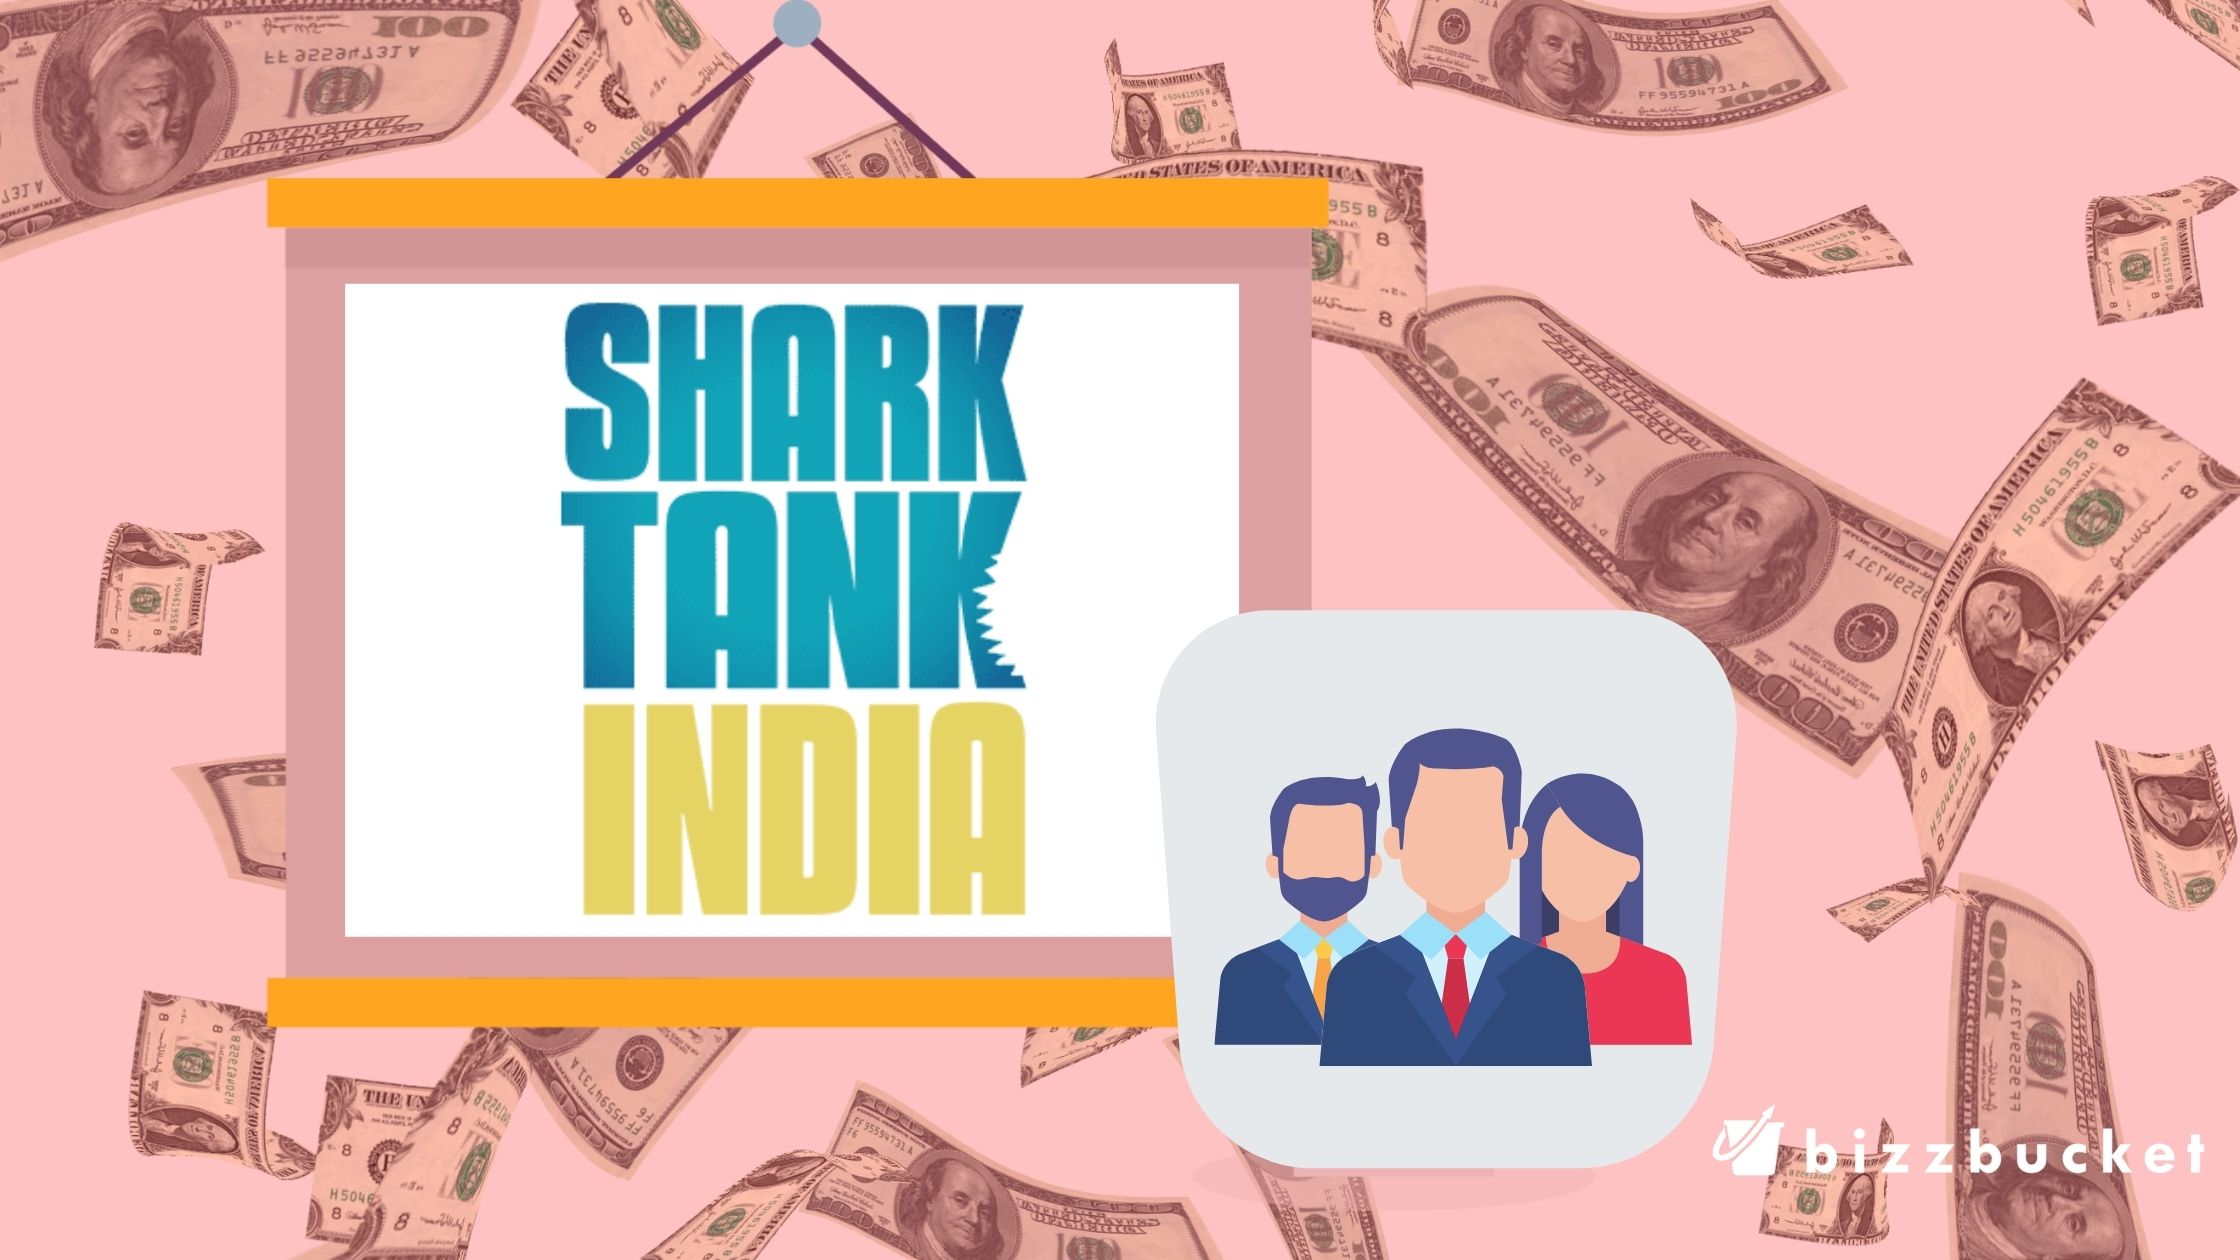 shark tank india